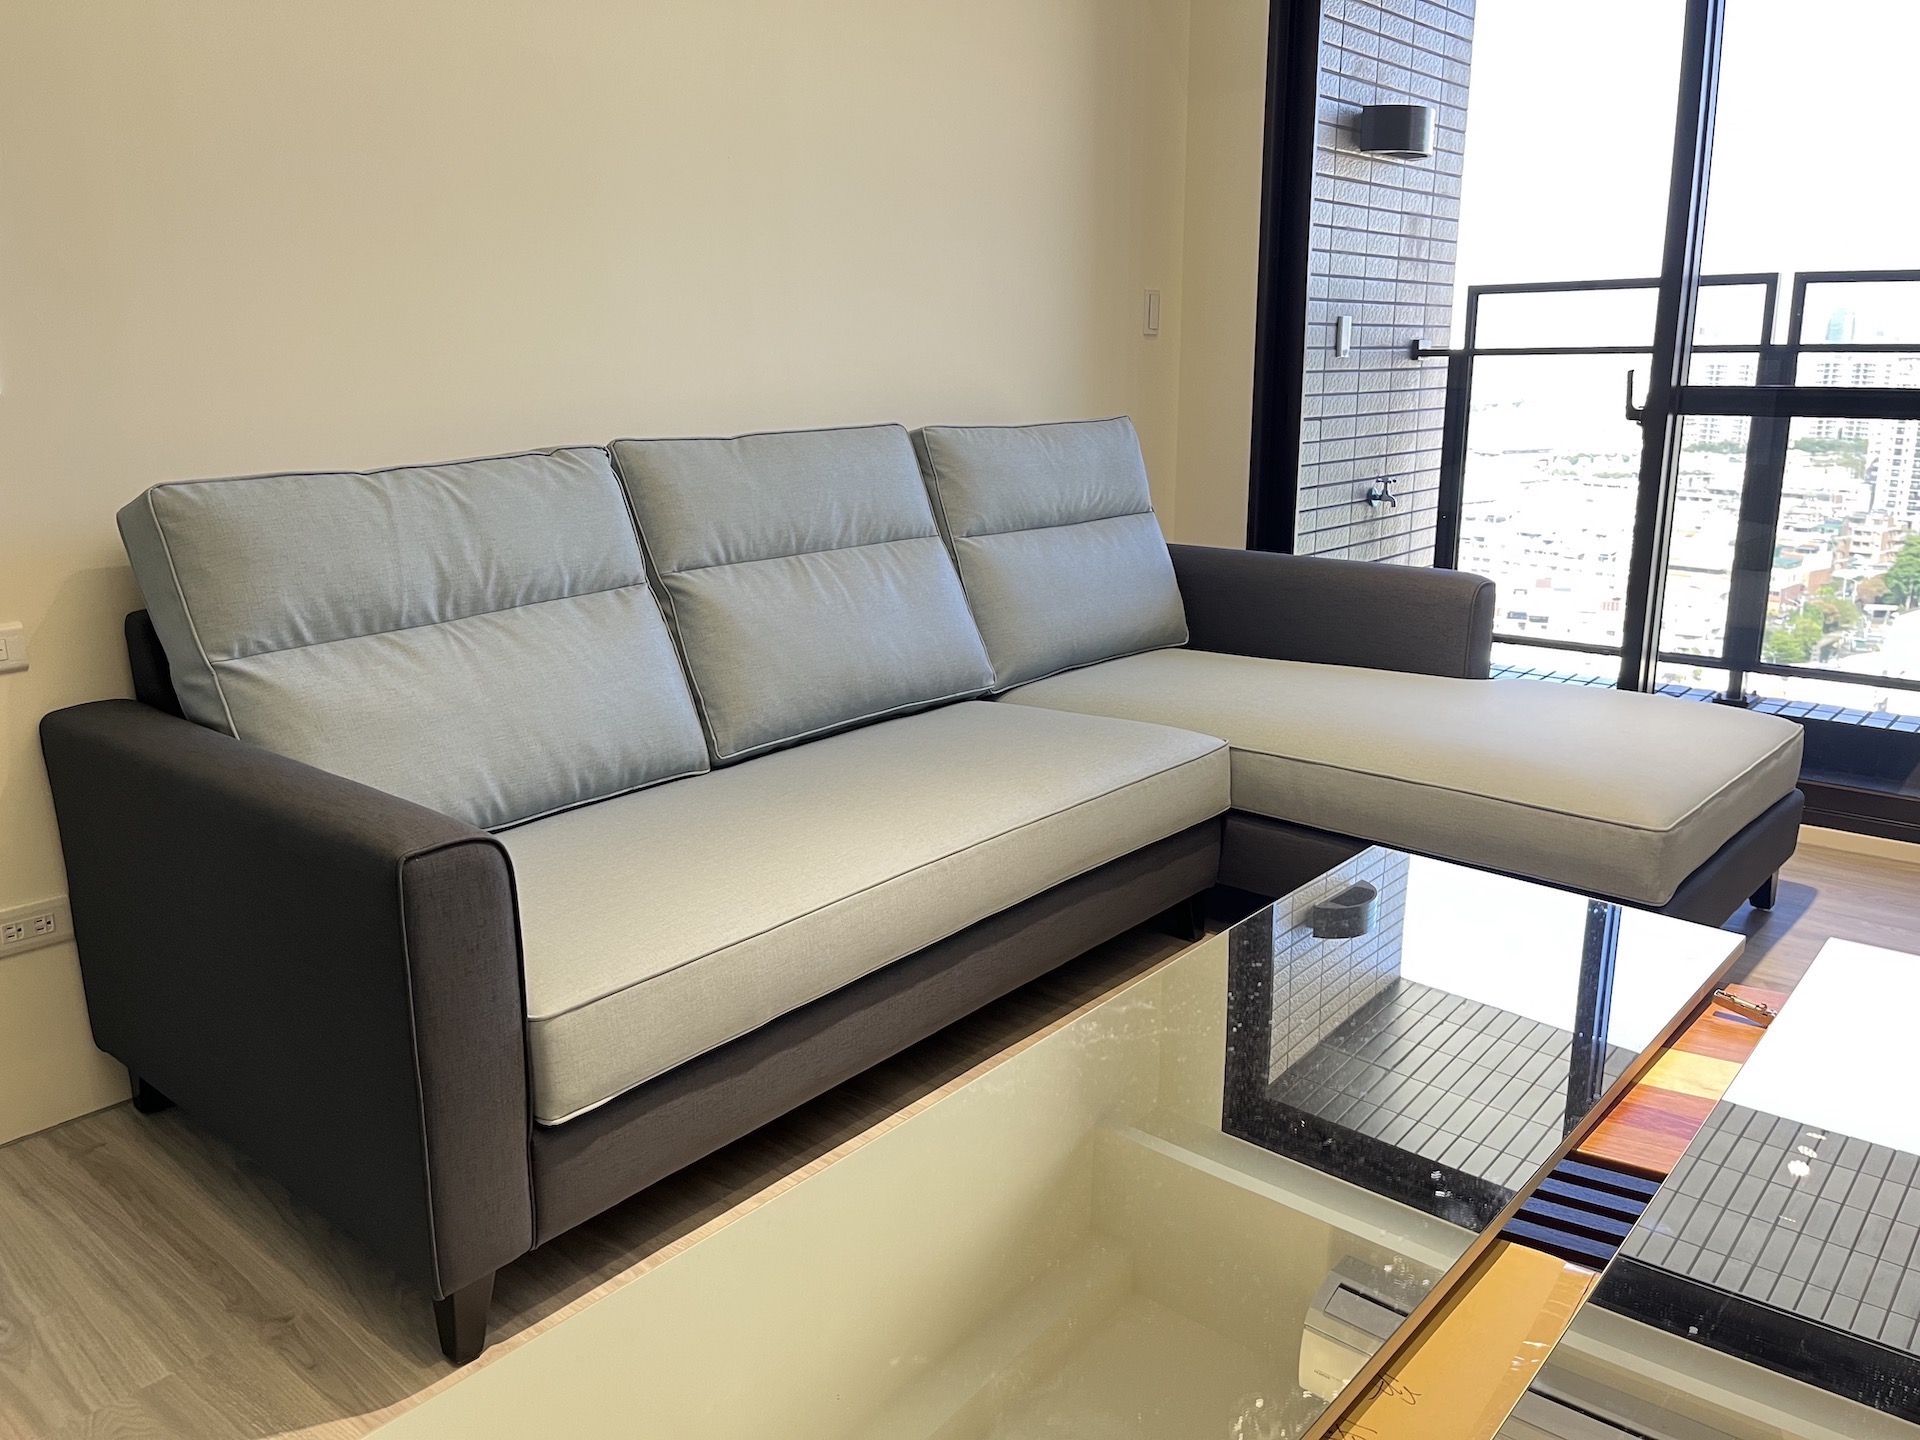 【客戶案例分享】台中東區雙色沙發訂製